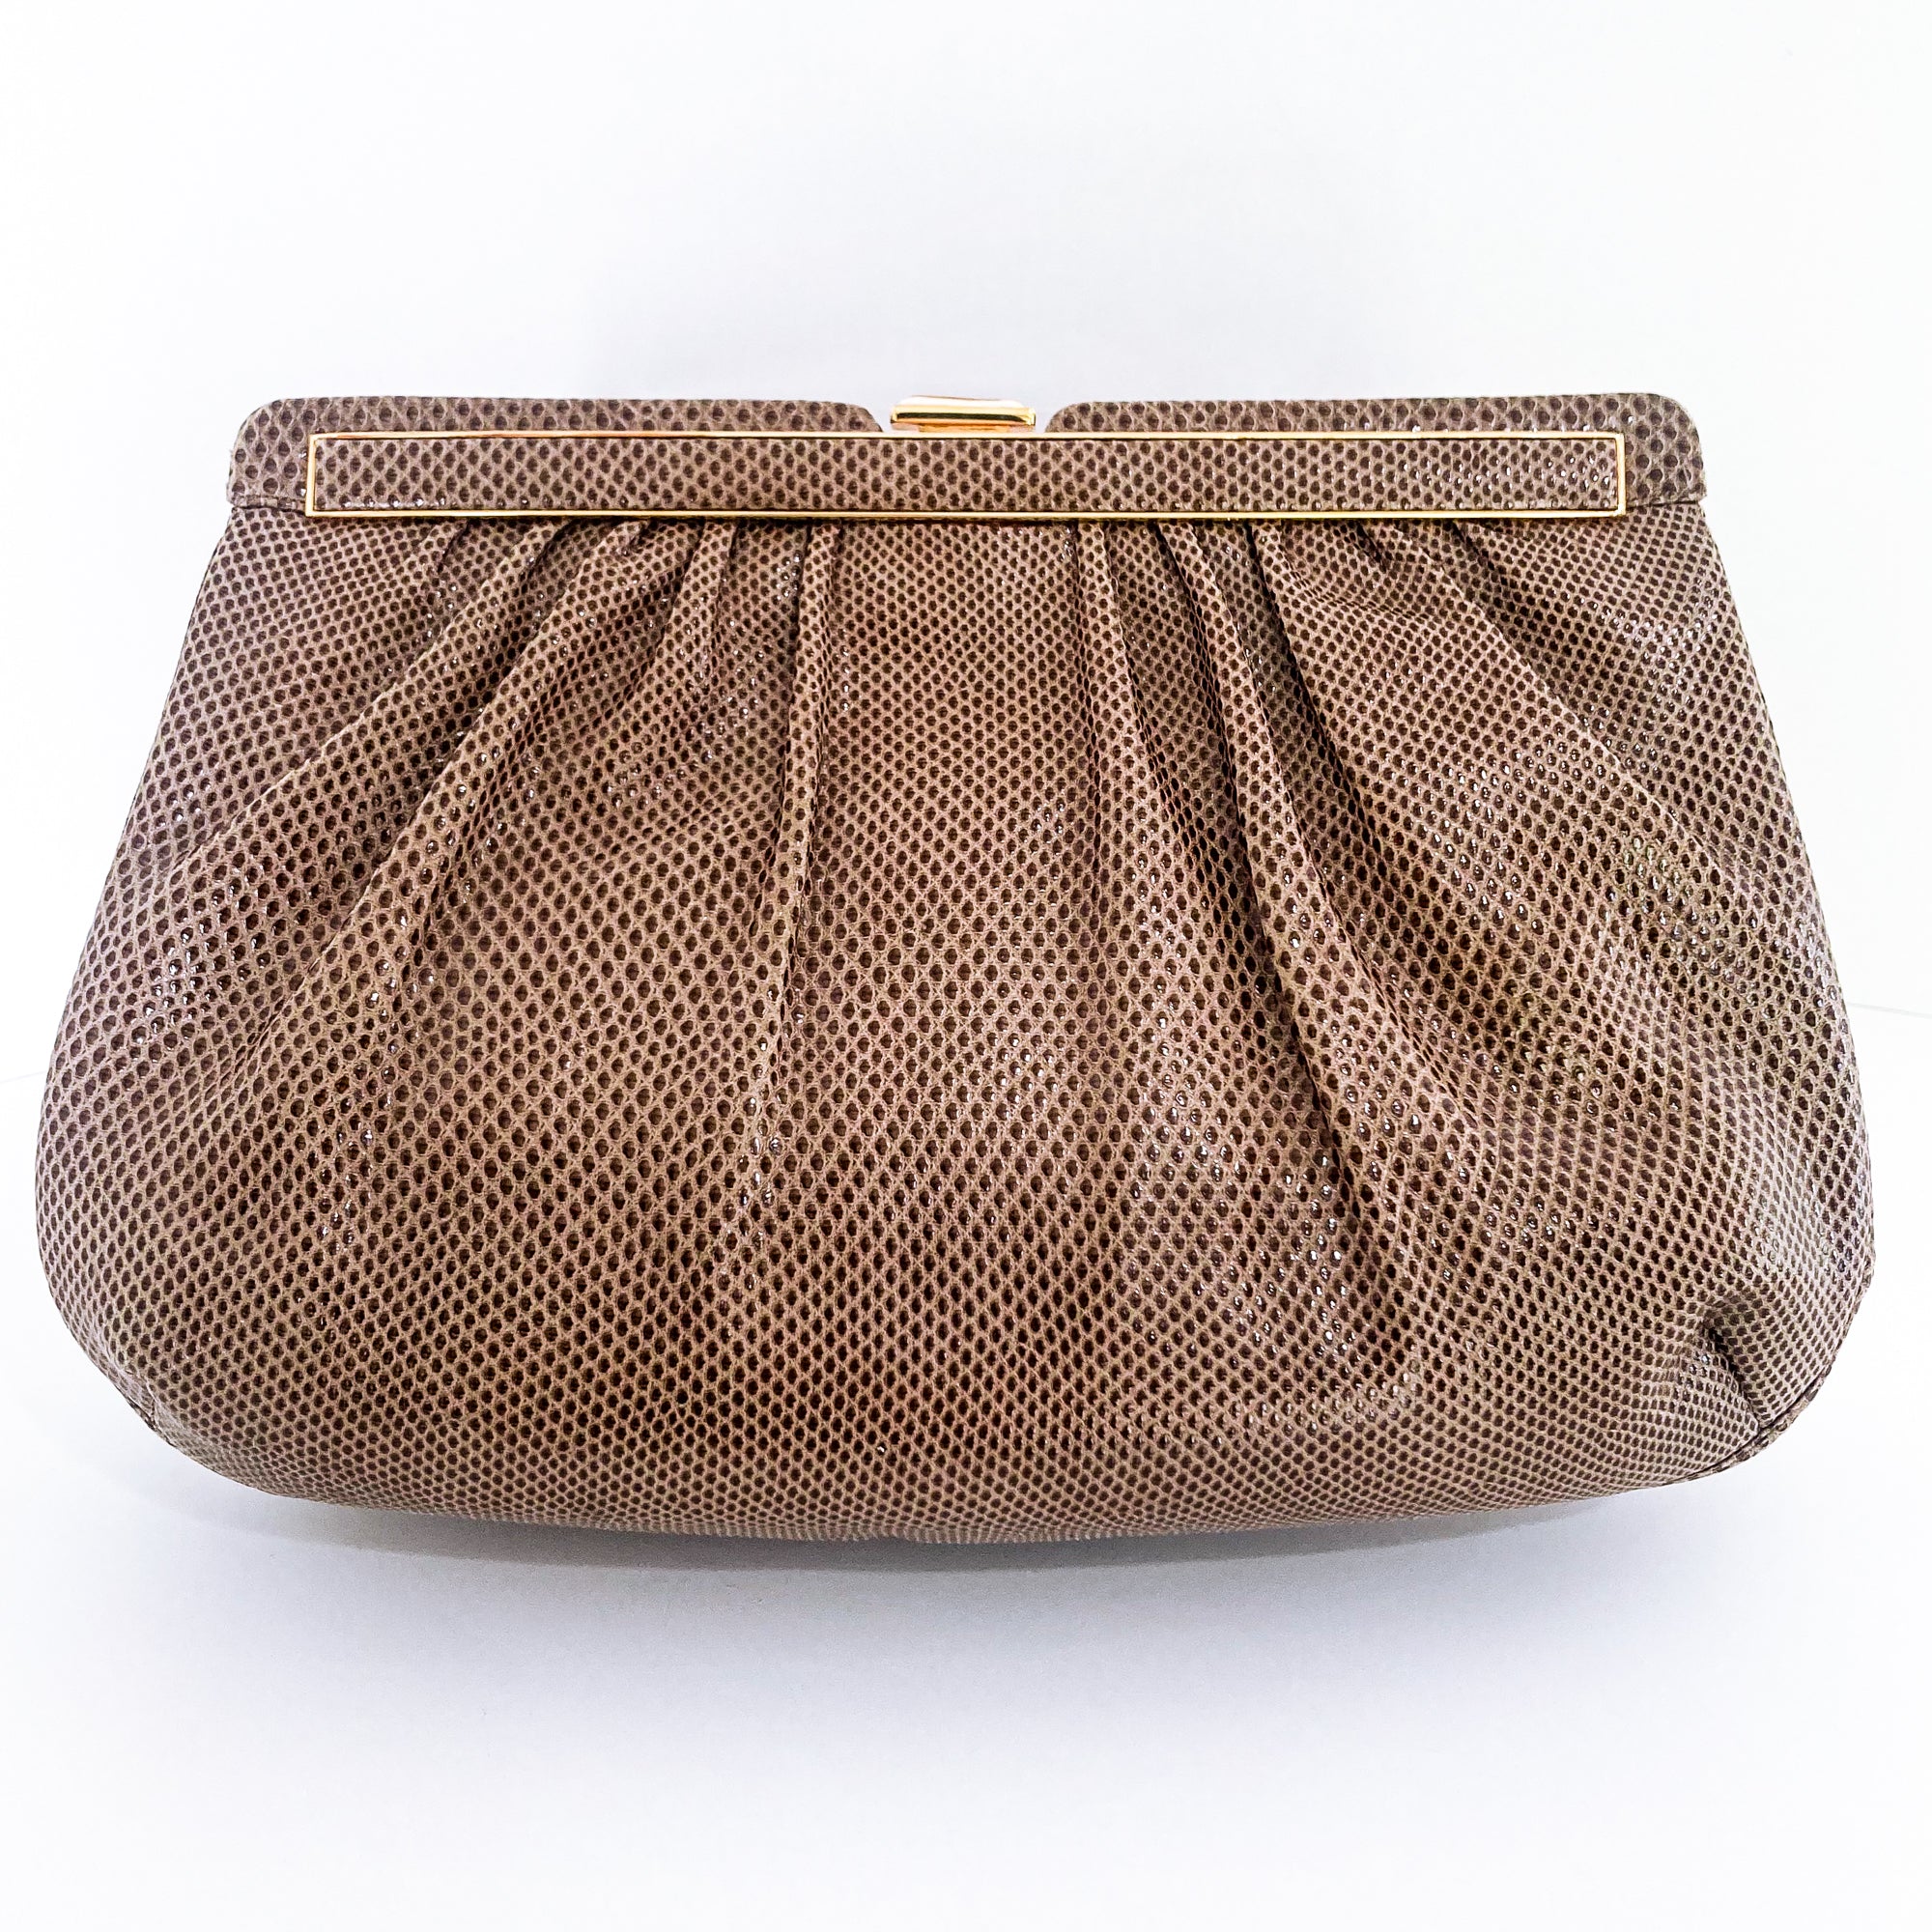 Vintage Leiber Leather Beige Handbag Clutch Purse Mitchell Sotka